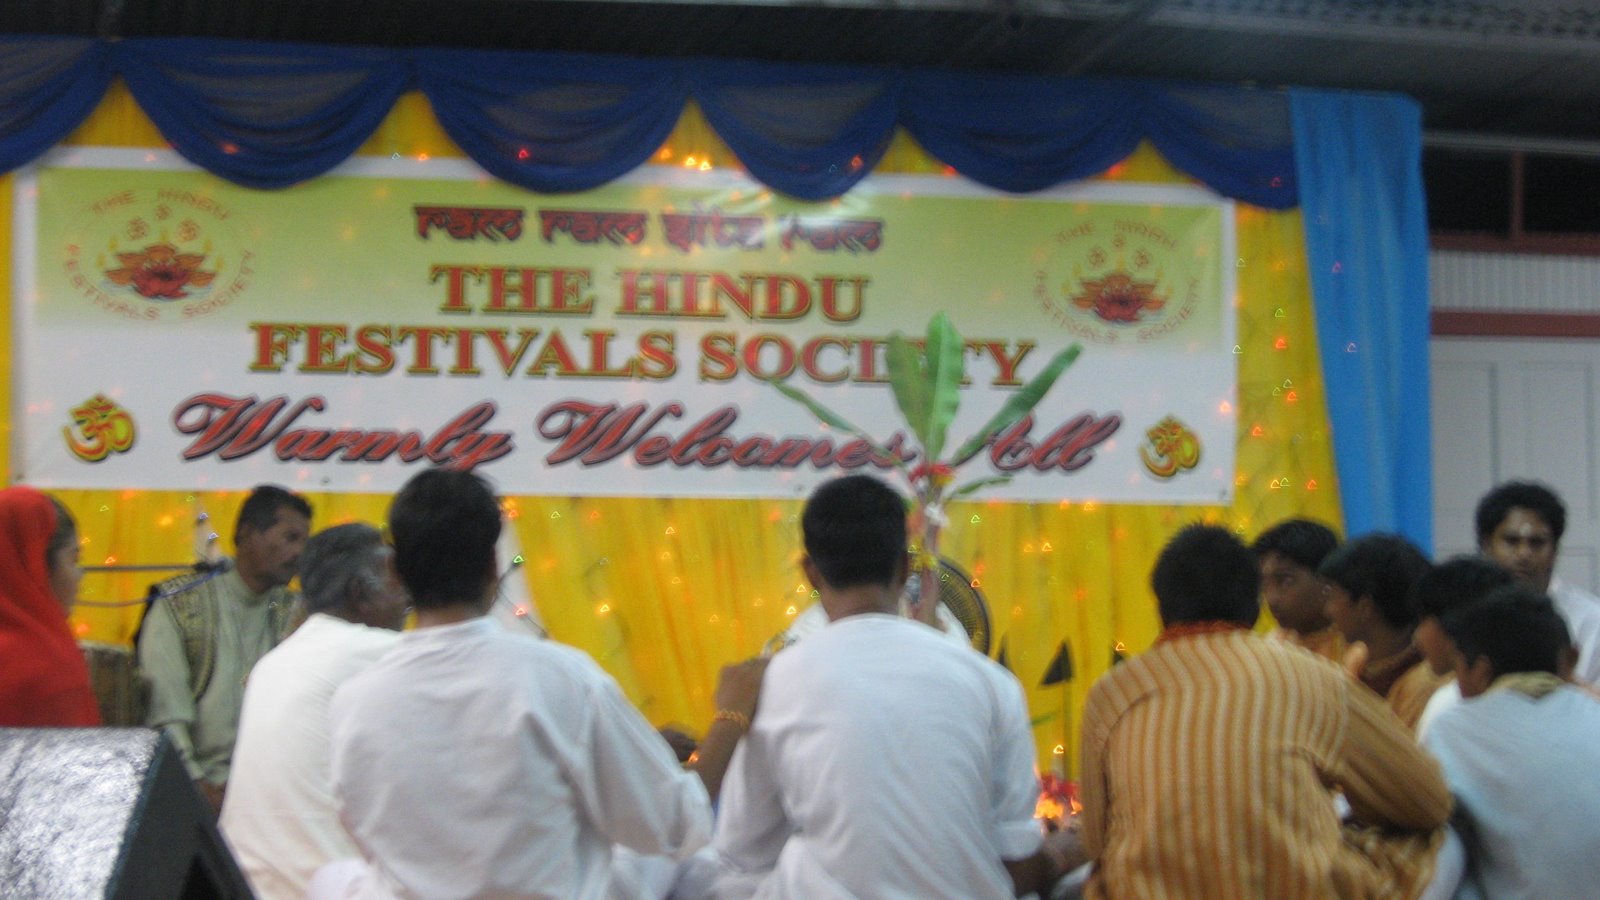 [Hindu+Festivals+Society+April+2008+001.jpg]